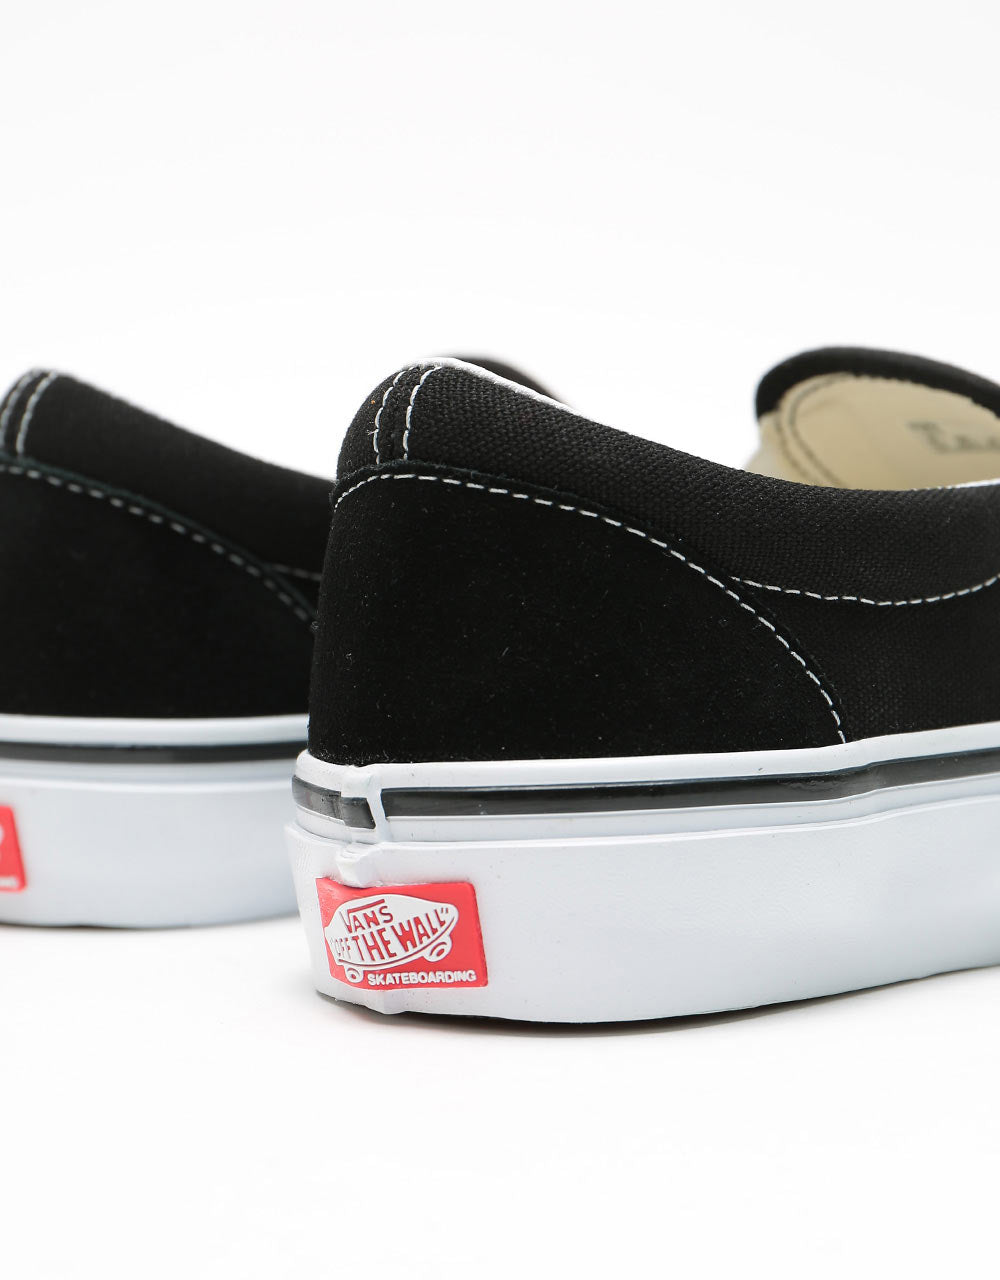 Vans Skate Slip-On Shoes - Black/White